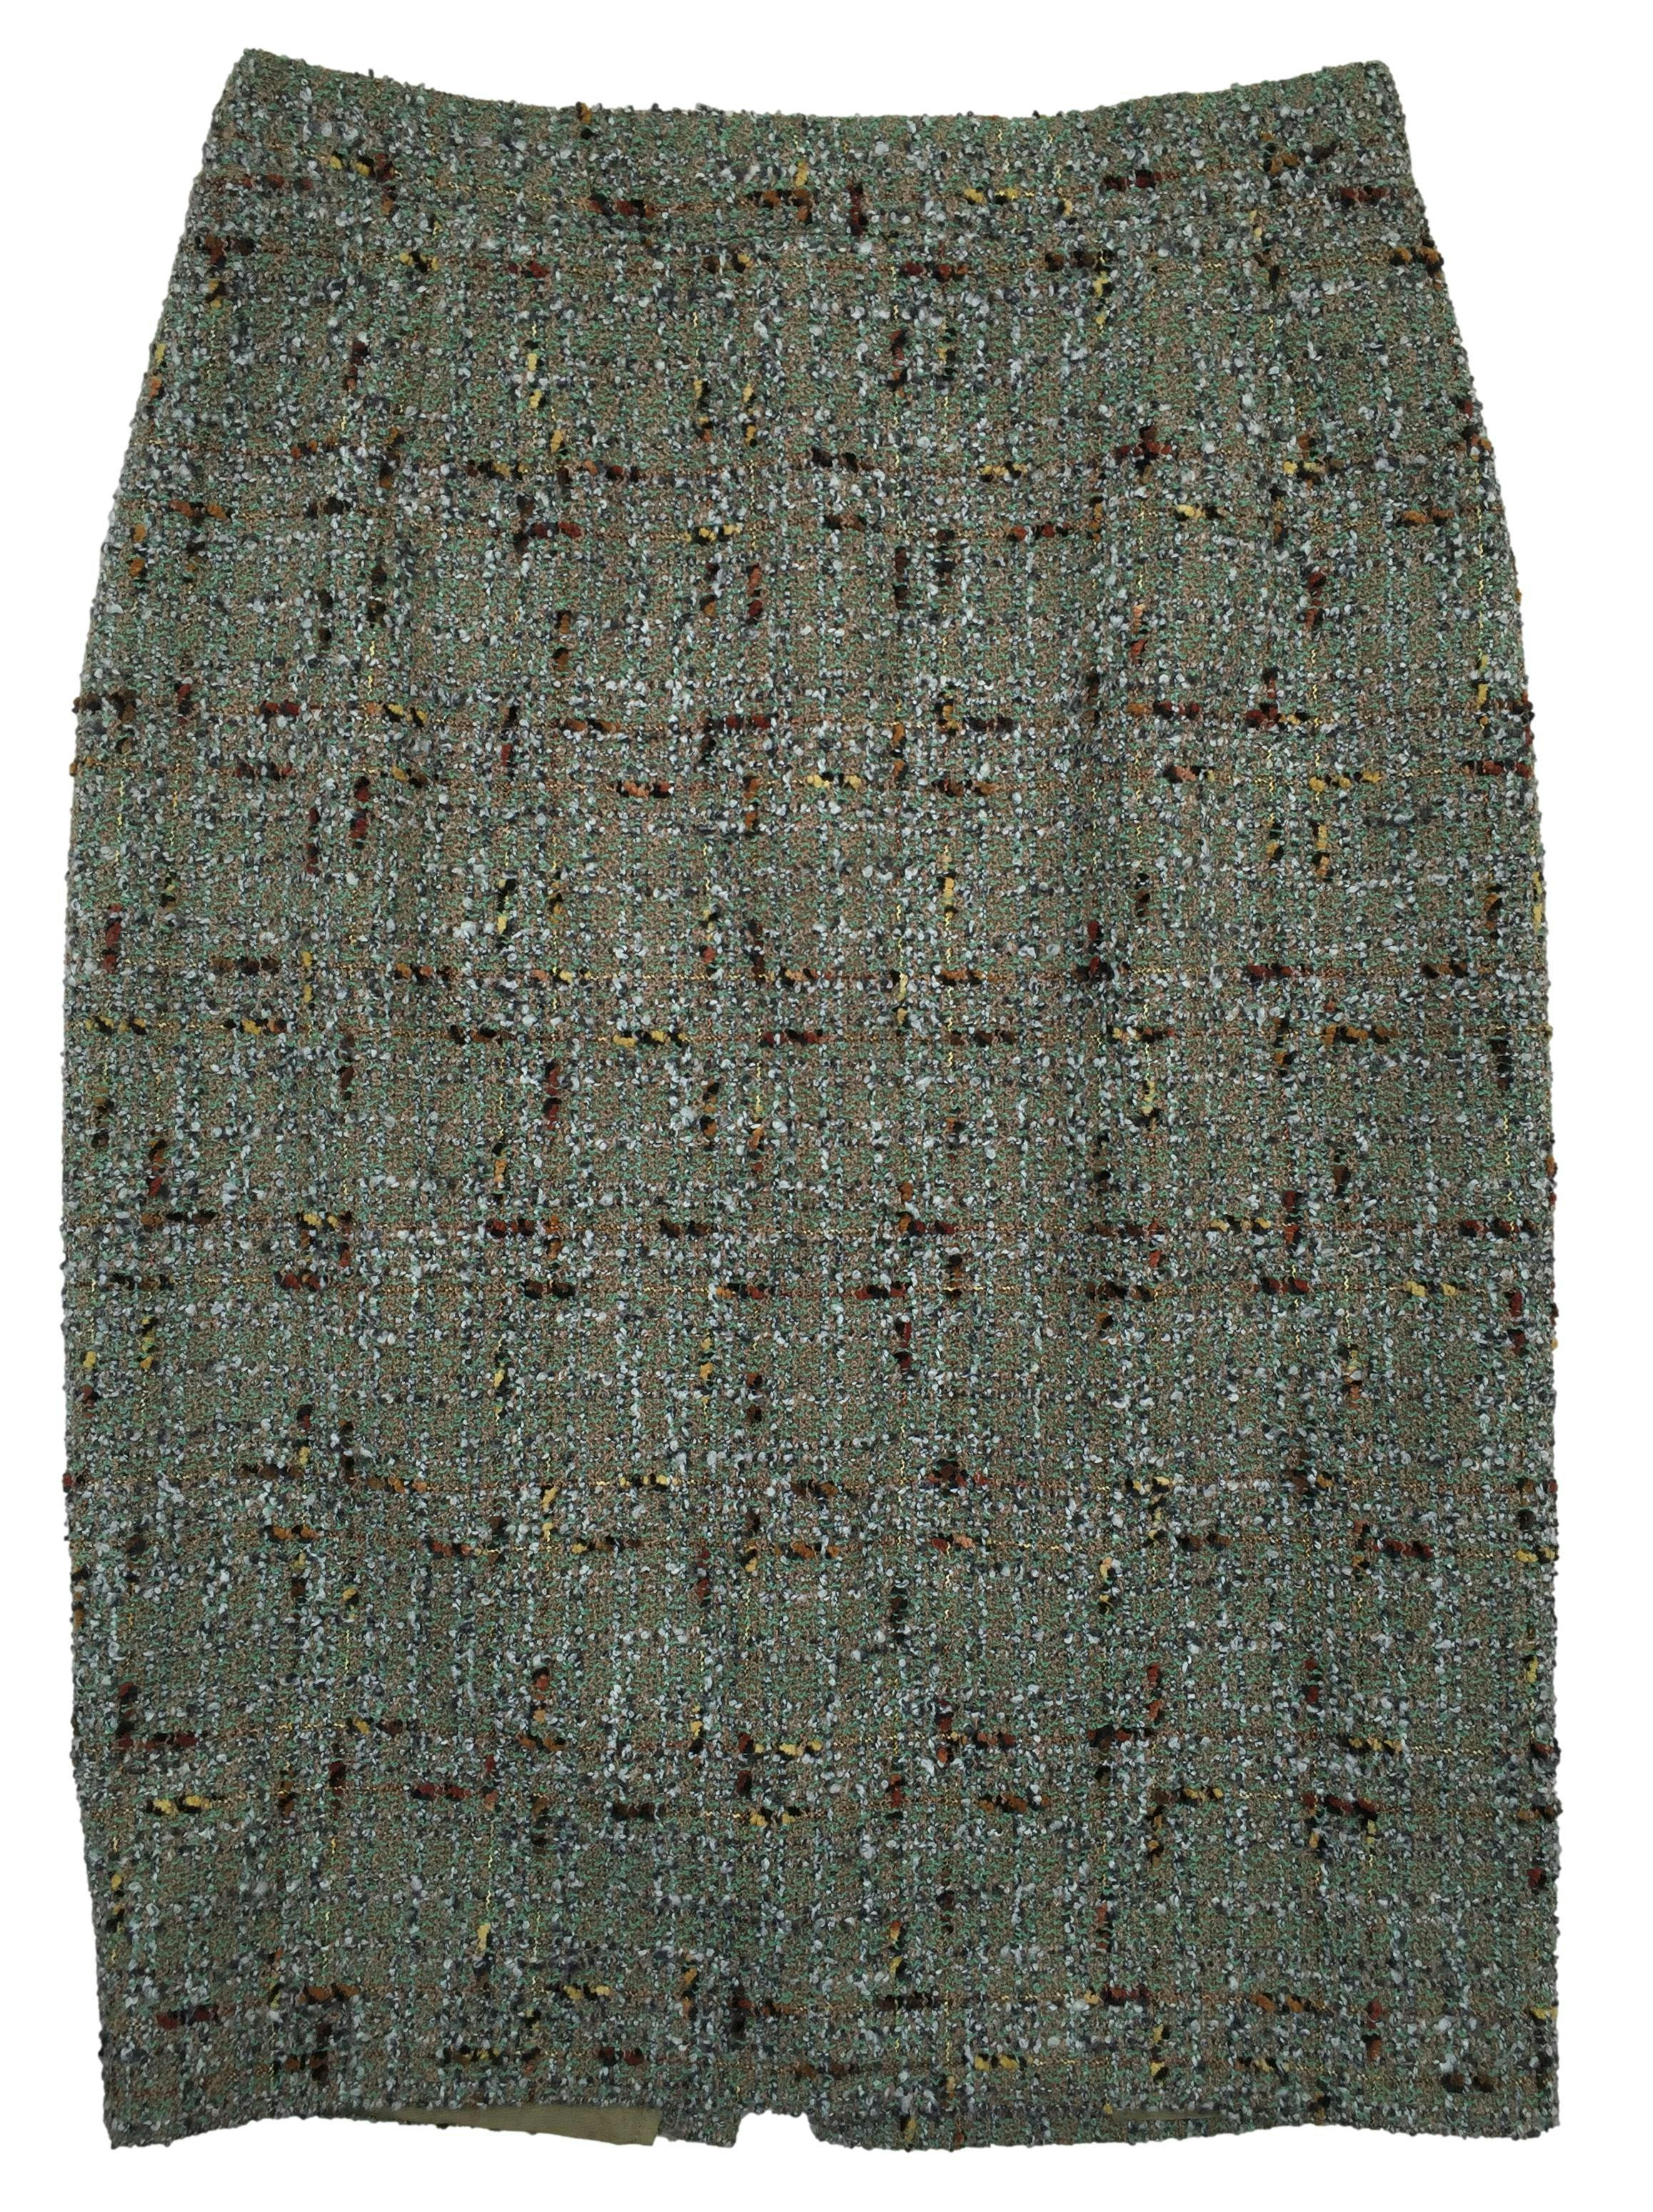 Falda de tweed en tonos verdes, forrada, con cierre y botón posterior. Cintura 70cm Largo 60cm